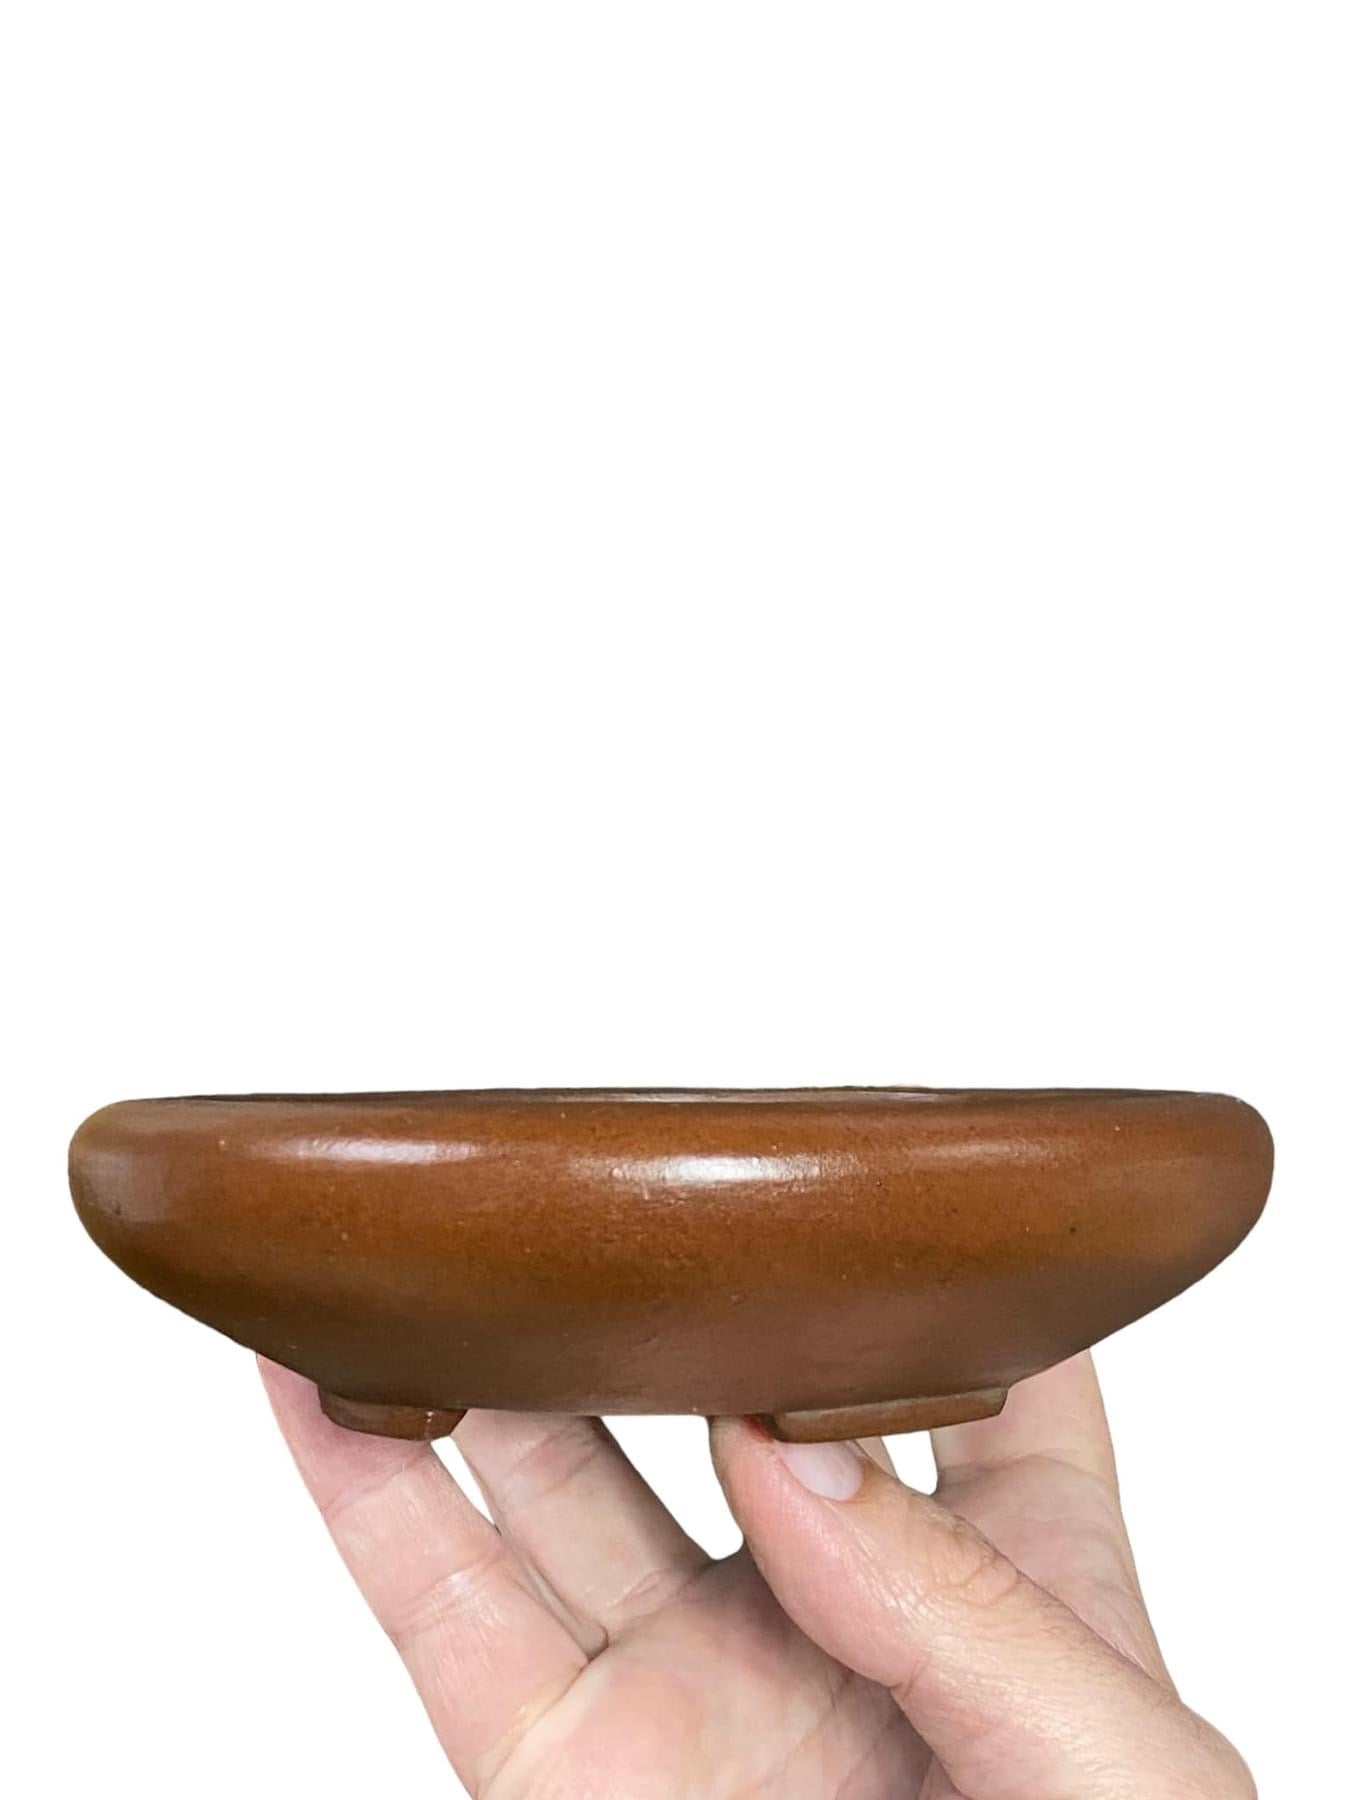 Shibakatsu - Unglazed Oval Style Bonsai Pot (Discounted)